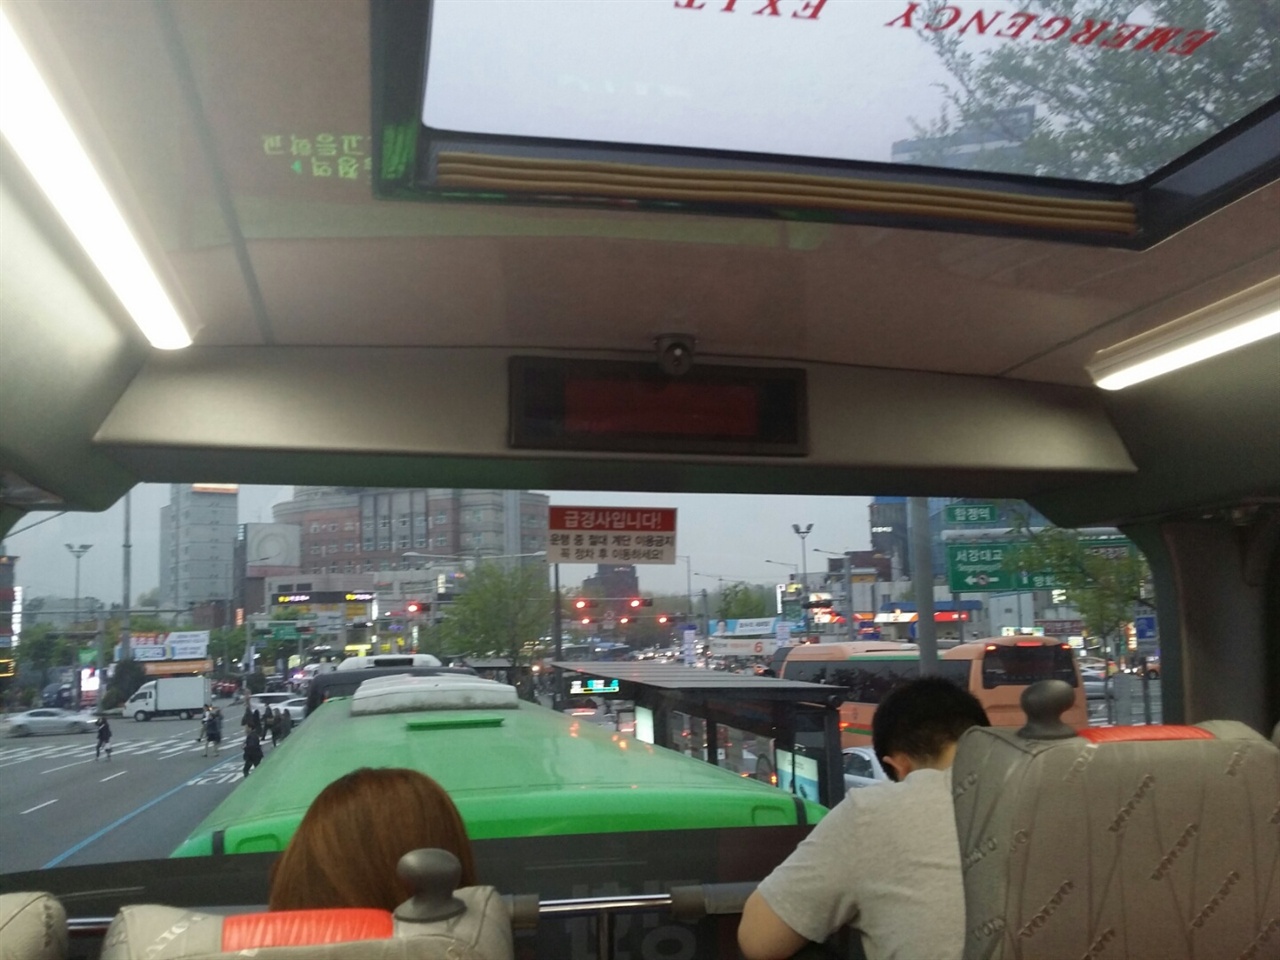 3000A번 2층 버스를 타면 서울의 지붕에 앉은 듯한 느낌이 든다.